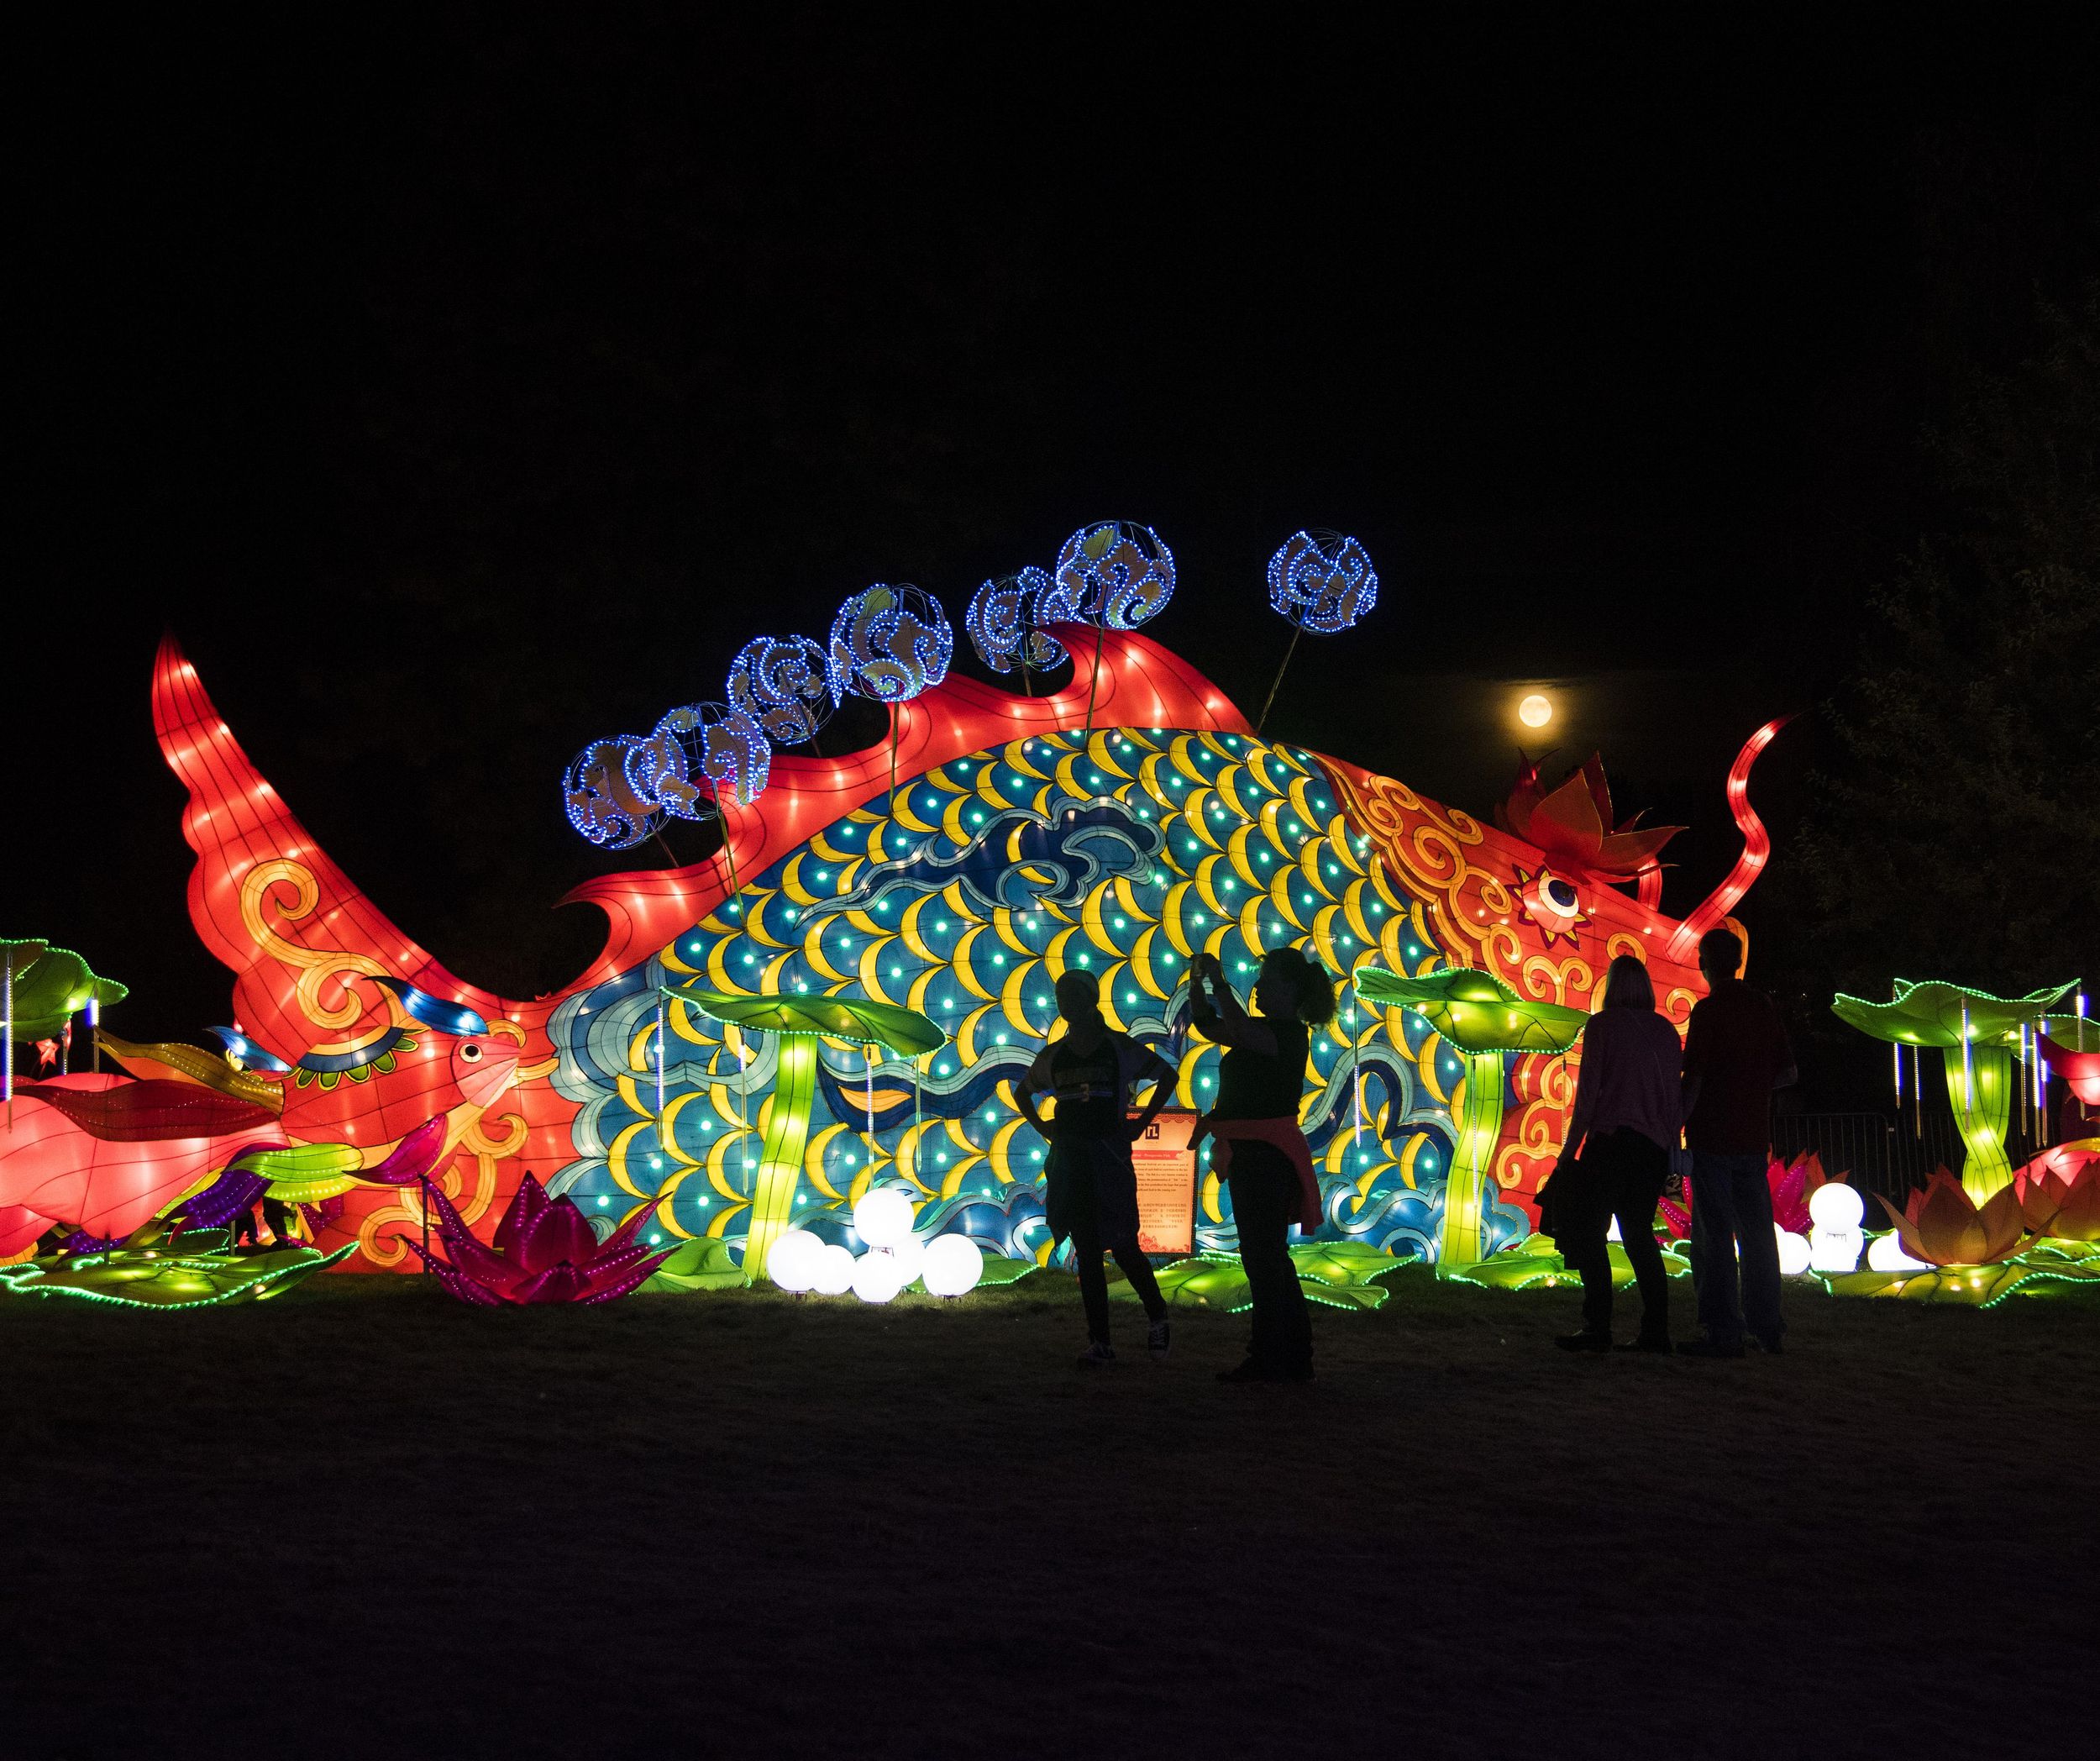 Chinese Lantern Festival returns to Spokane Sept. 16, 2016 The